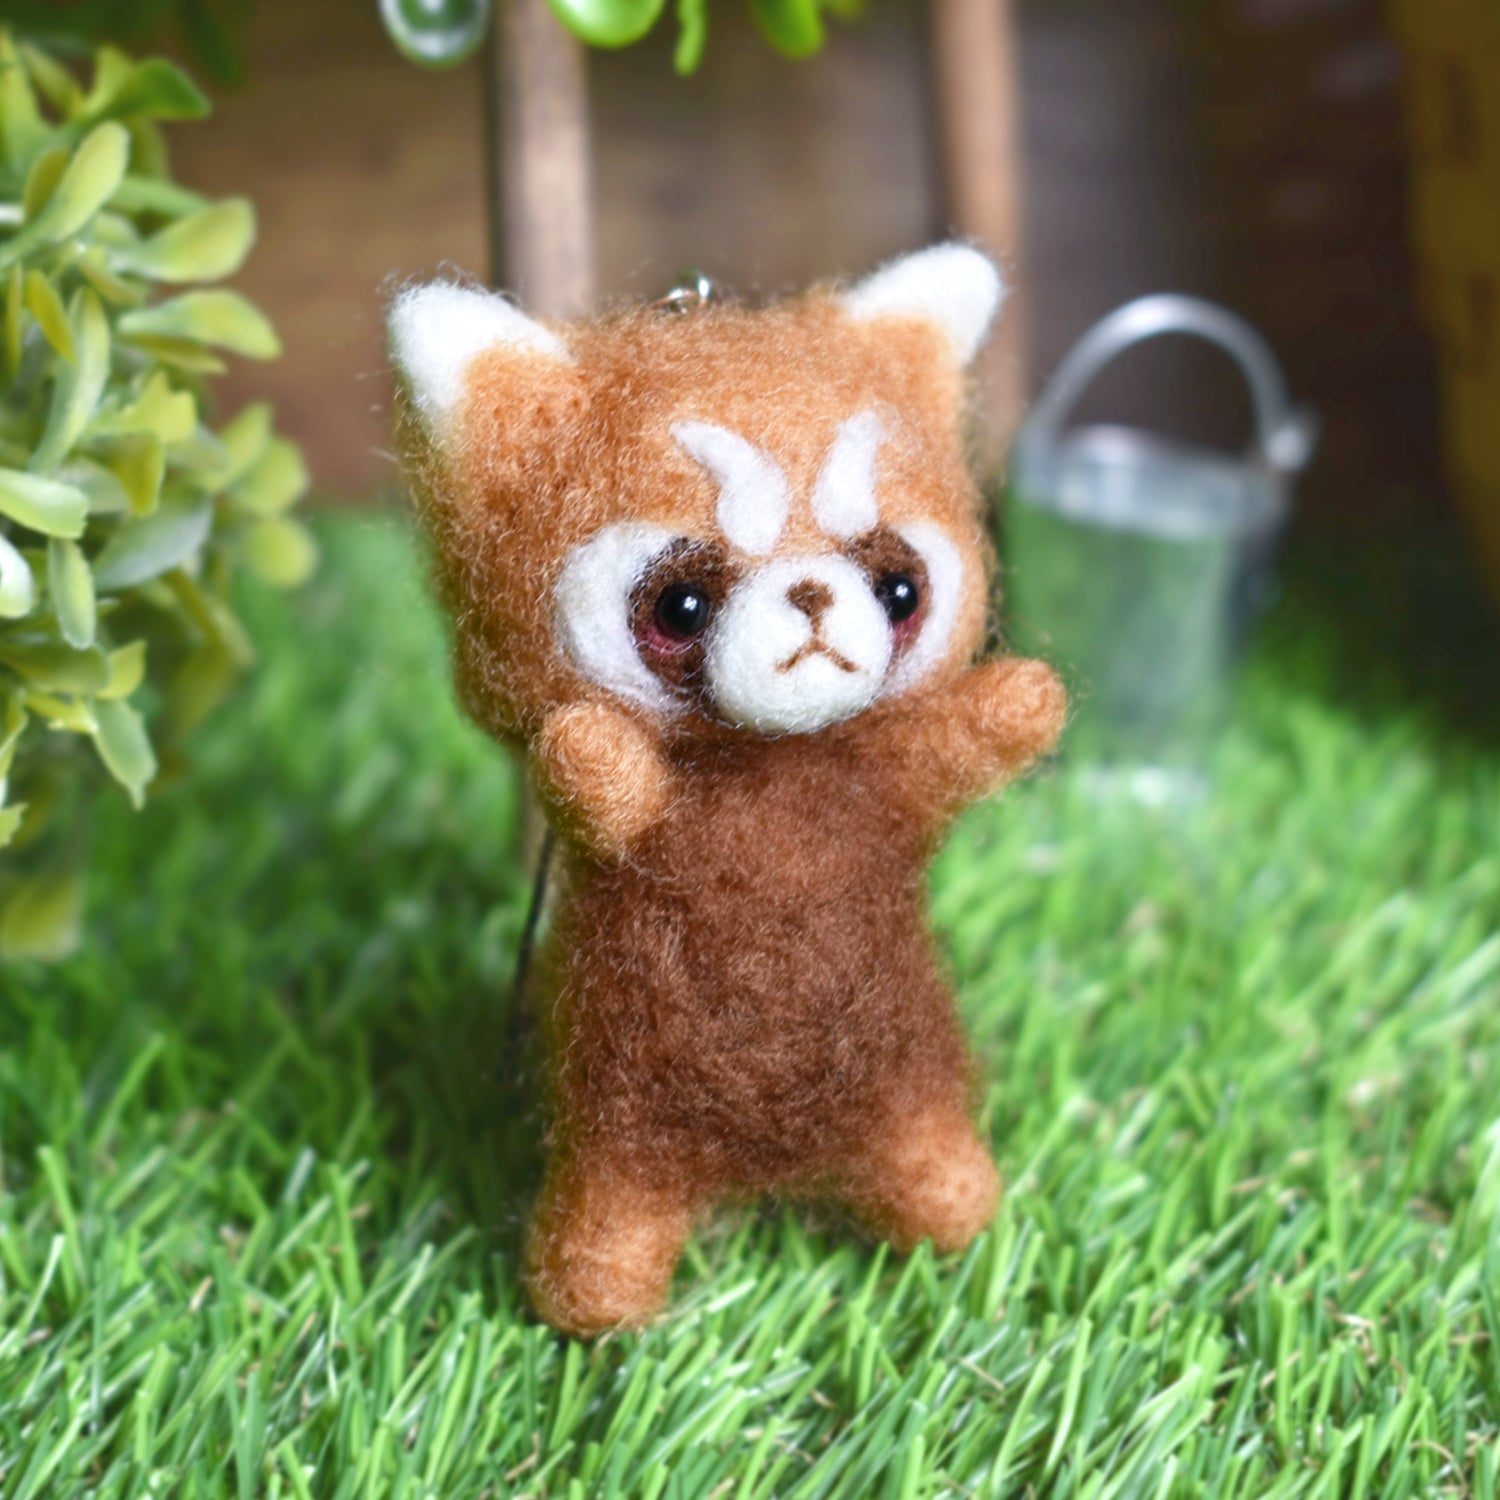 秋都 Japanese Handmade Cute Needle Felted Figurine Red Panda with a threatening attacking pose RARE FIND ZAKKA